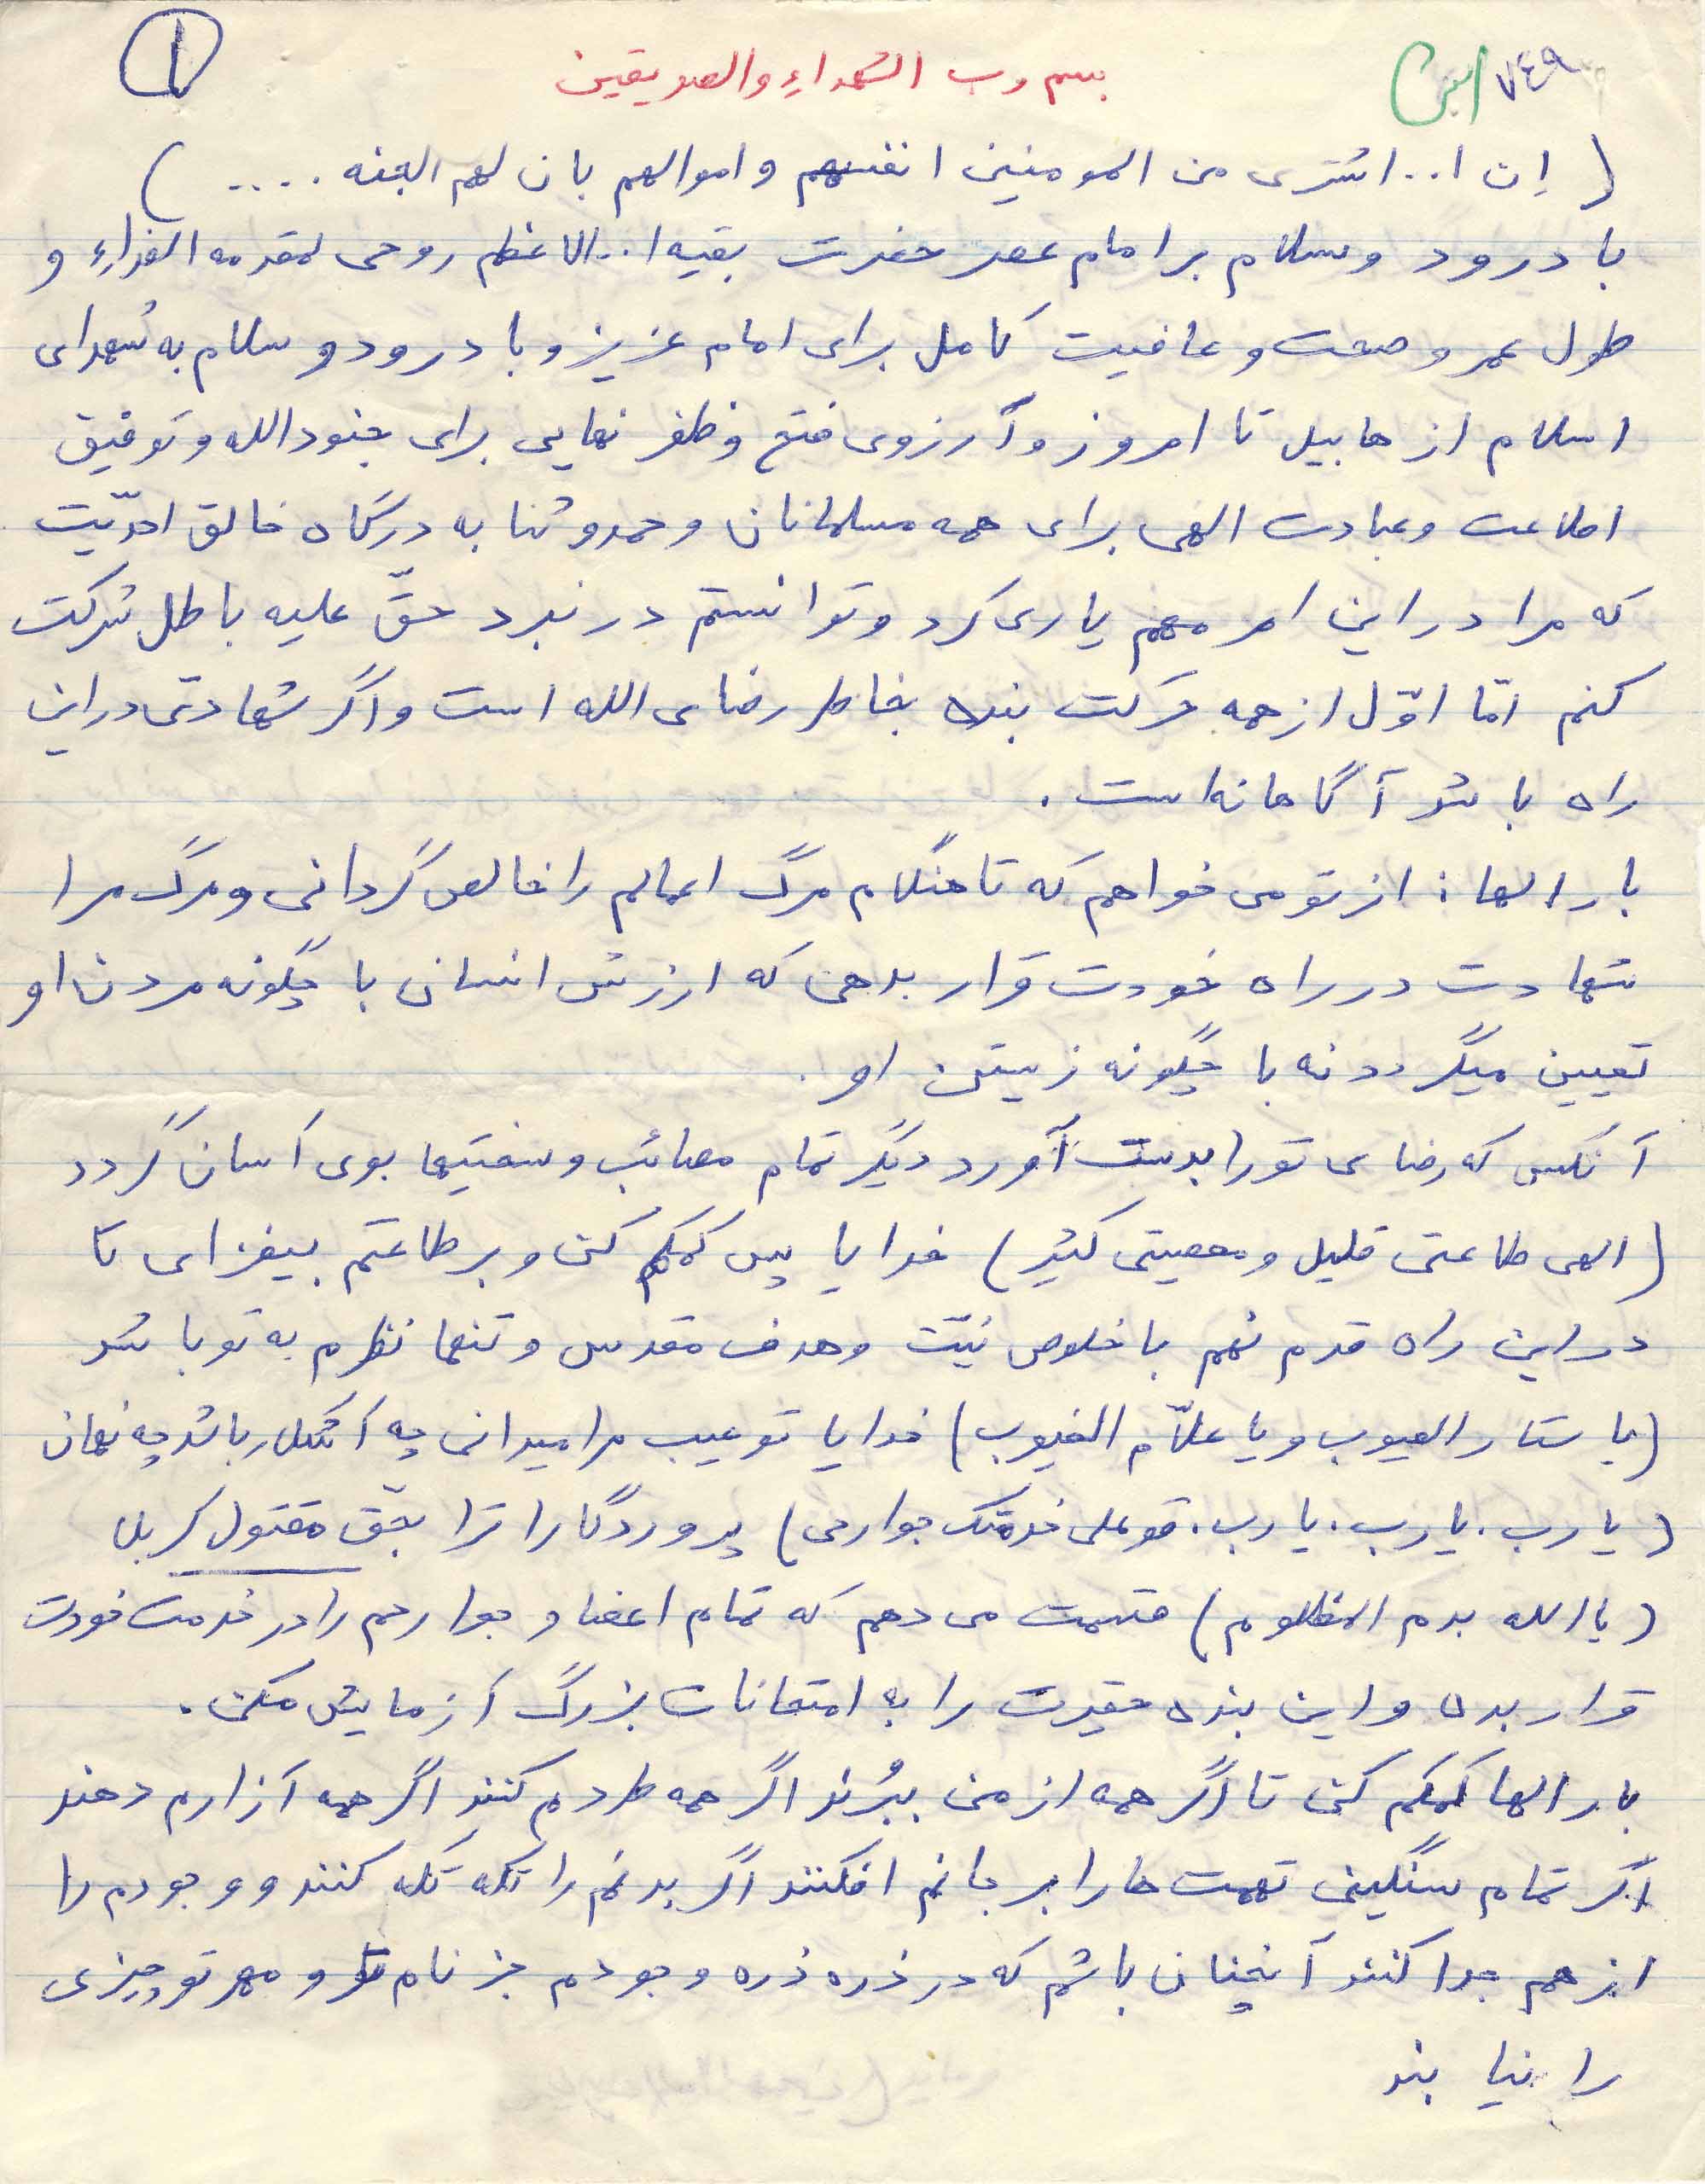 ‏متن وصیت نامه  « شهید محسن چايلو» به همراه دستخطش